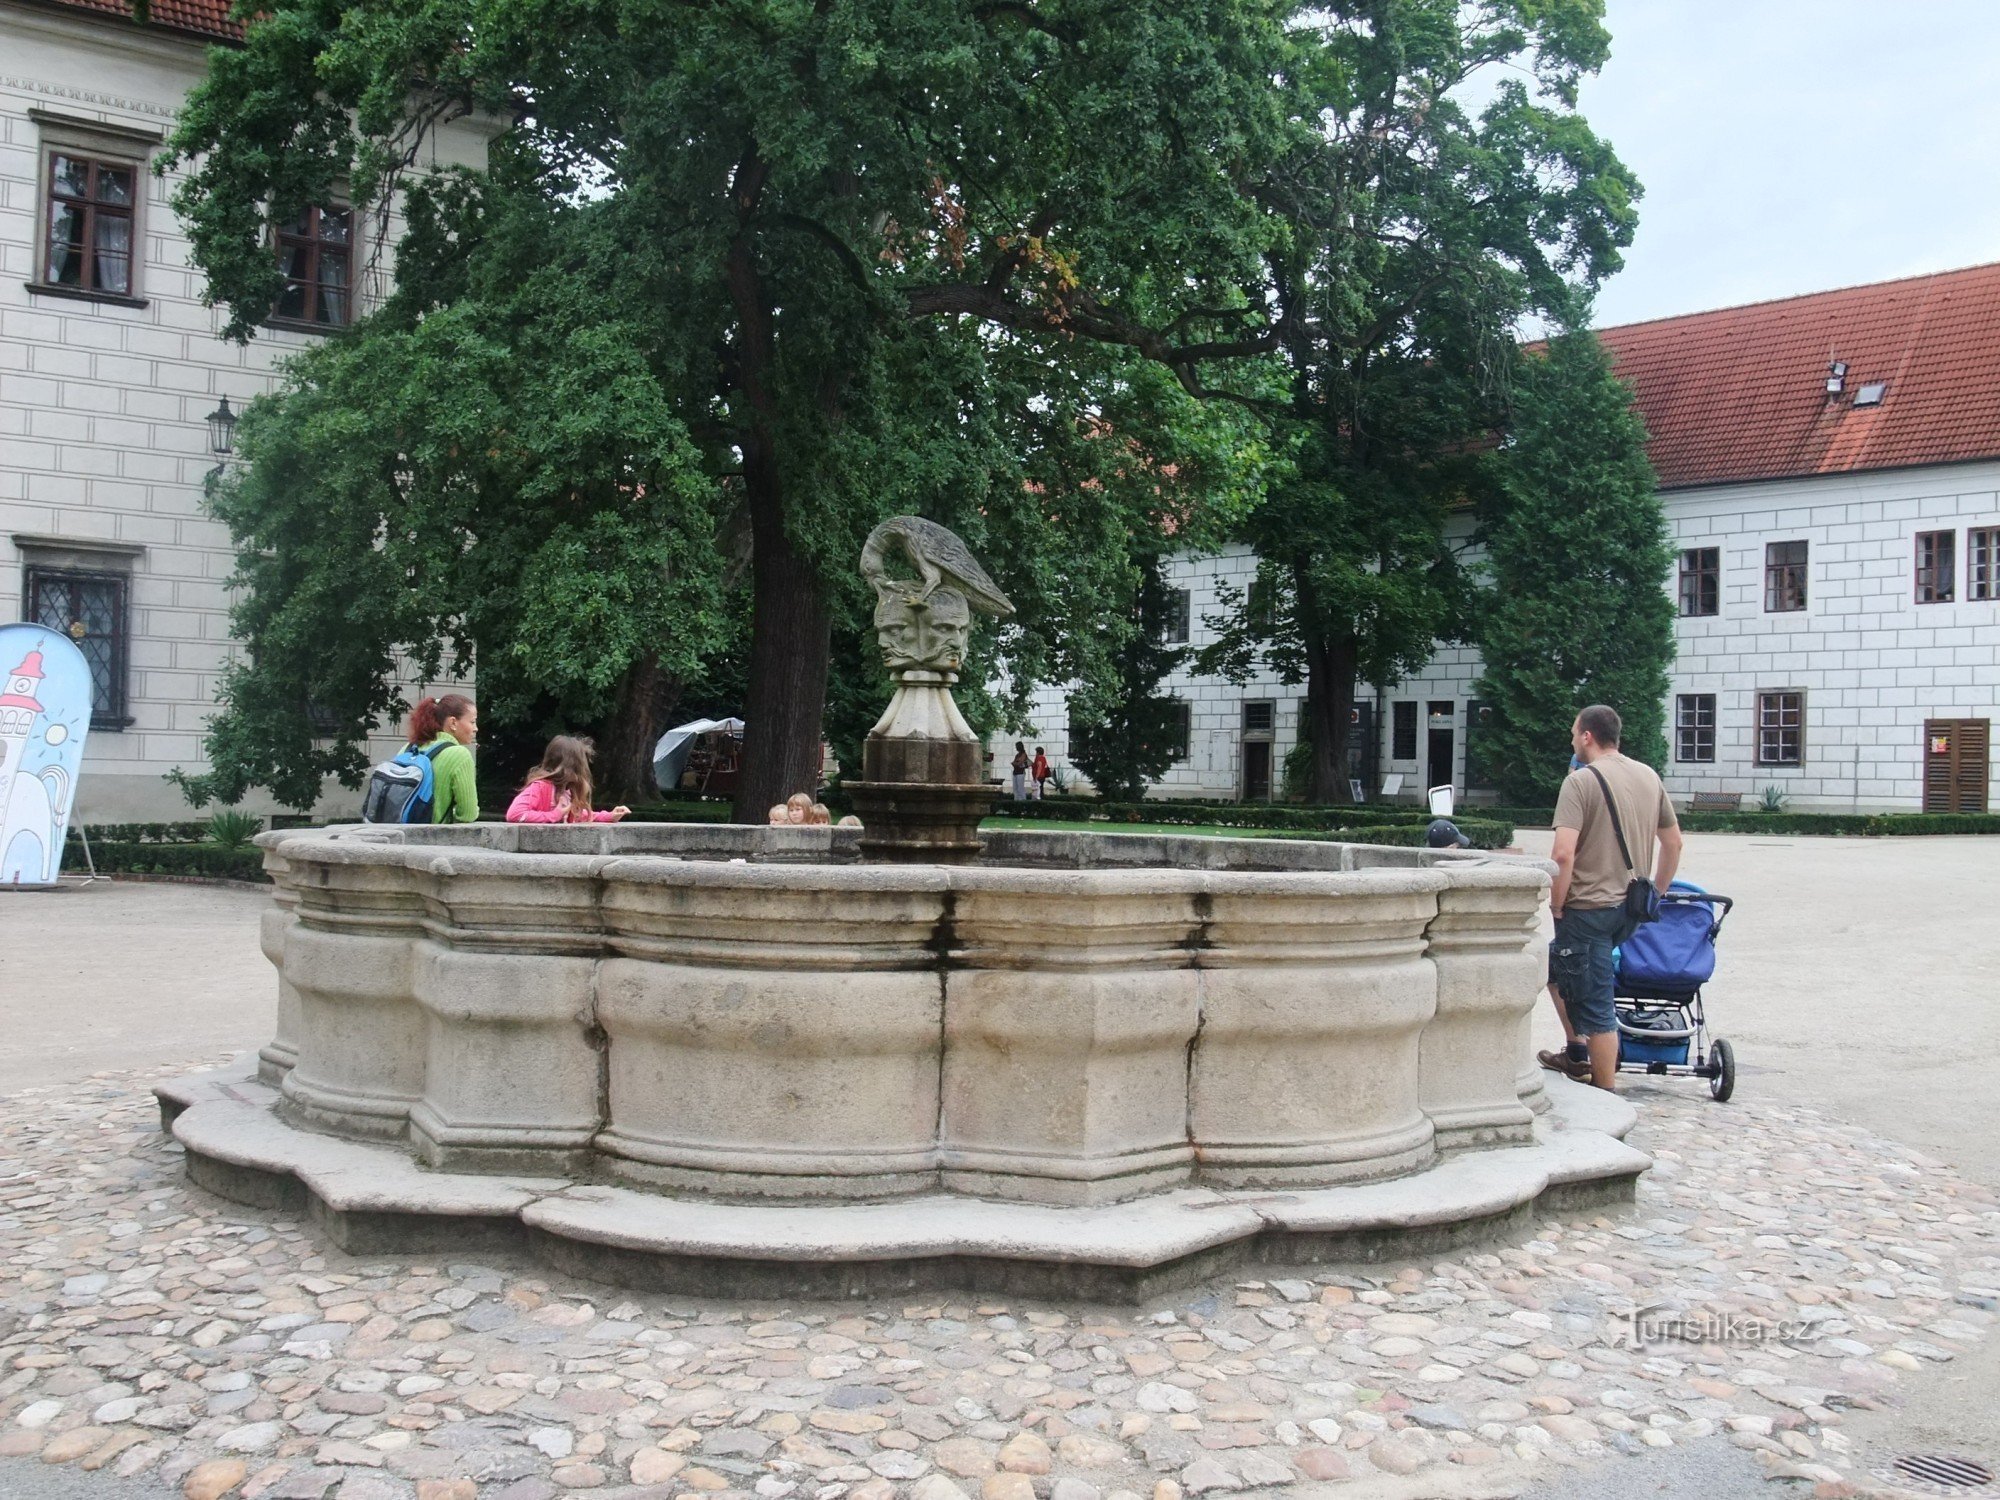 极具特色的施瓦岑贝格喷泉